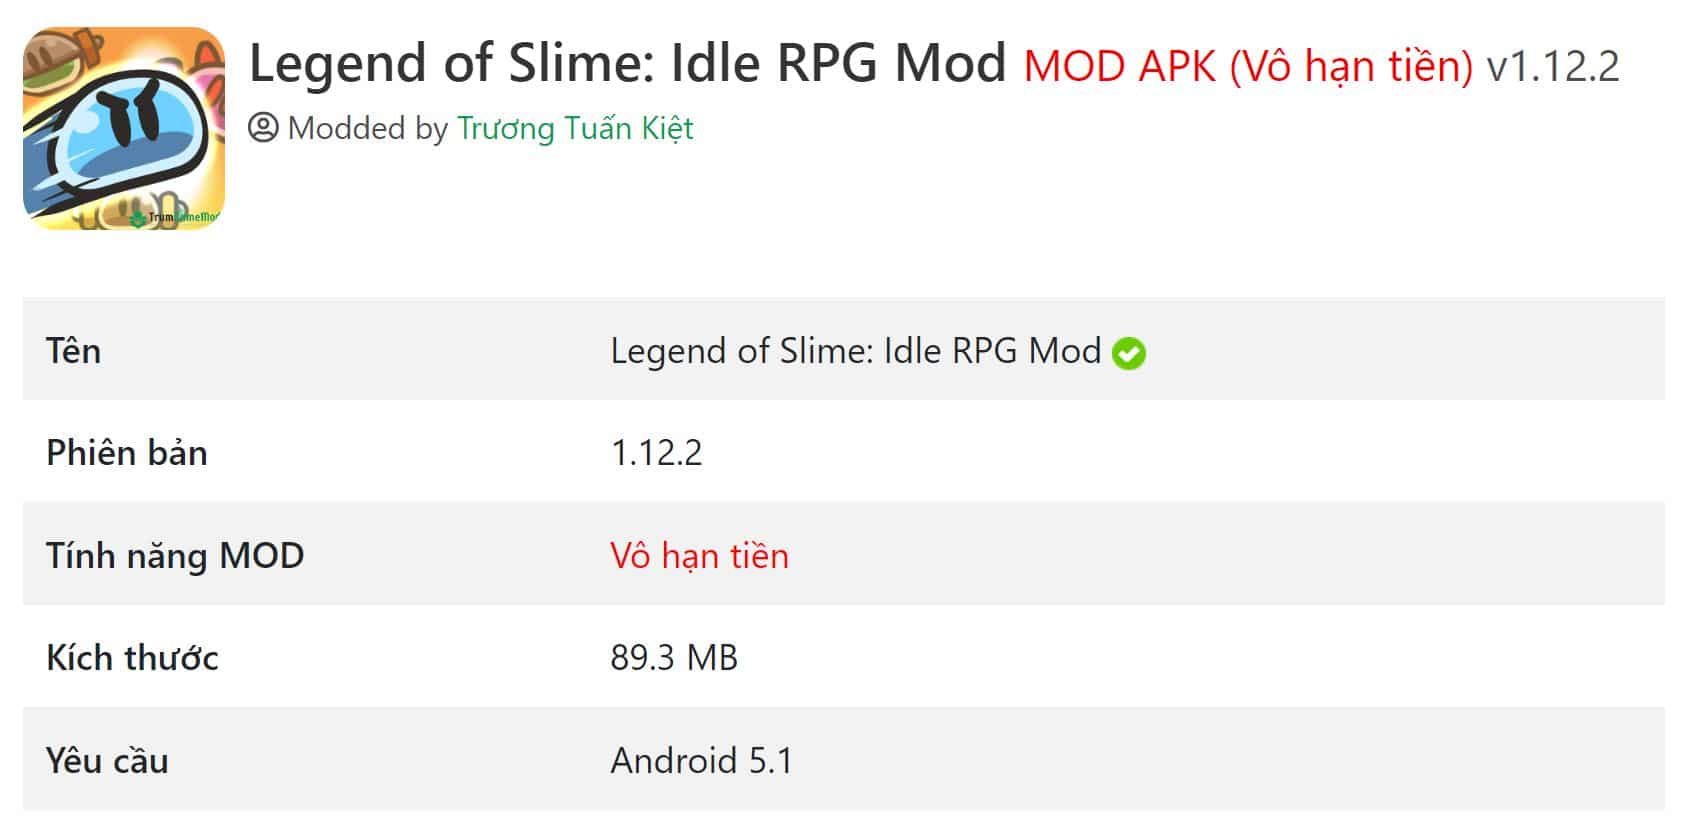 Legend of Slime v1.12.2